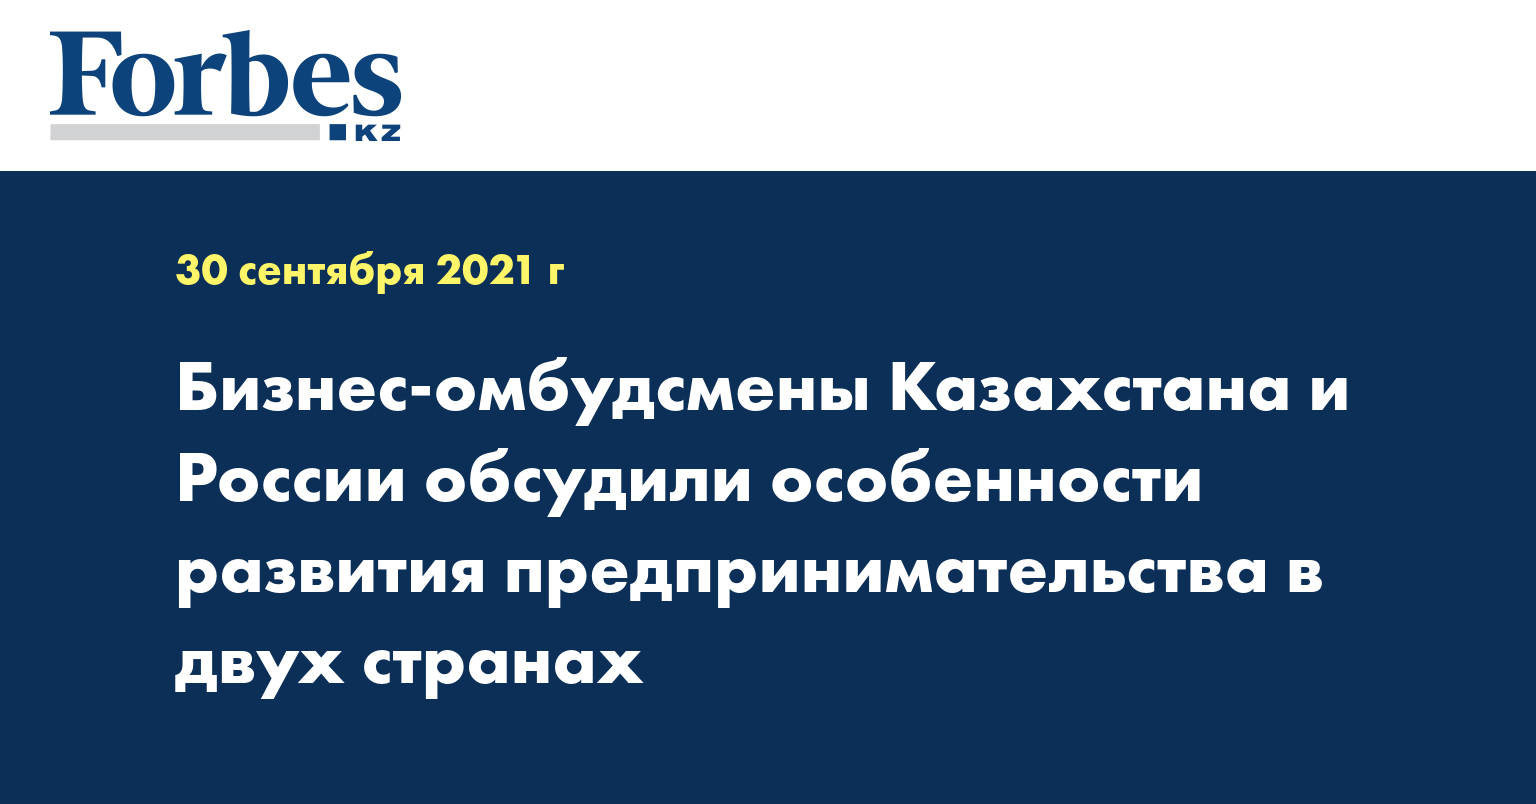 Бизнес-омбудсмены Казахстана и России обсудили особенности развития предпринимательства в двух странах